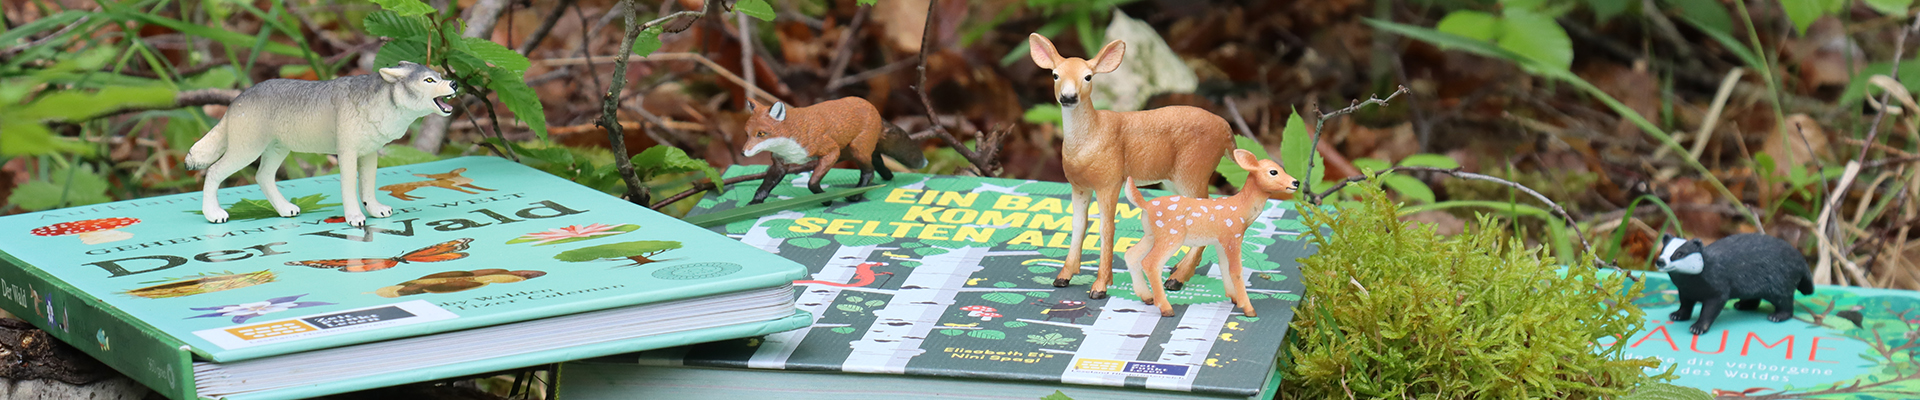 Das Bild zeigt eine Waldszene mit Ästen, Moos und Blättern. In der Mitte liegen zwei Kinderbücher zum Thema Wald und Natur. Auf den Büchern sind Tierfiguren platziert, die im heimischen Wald vorkommen, zum Beispiel Fuchs und Reh.